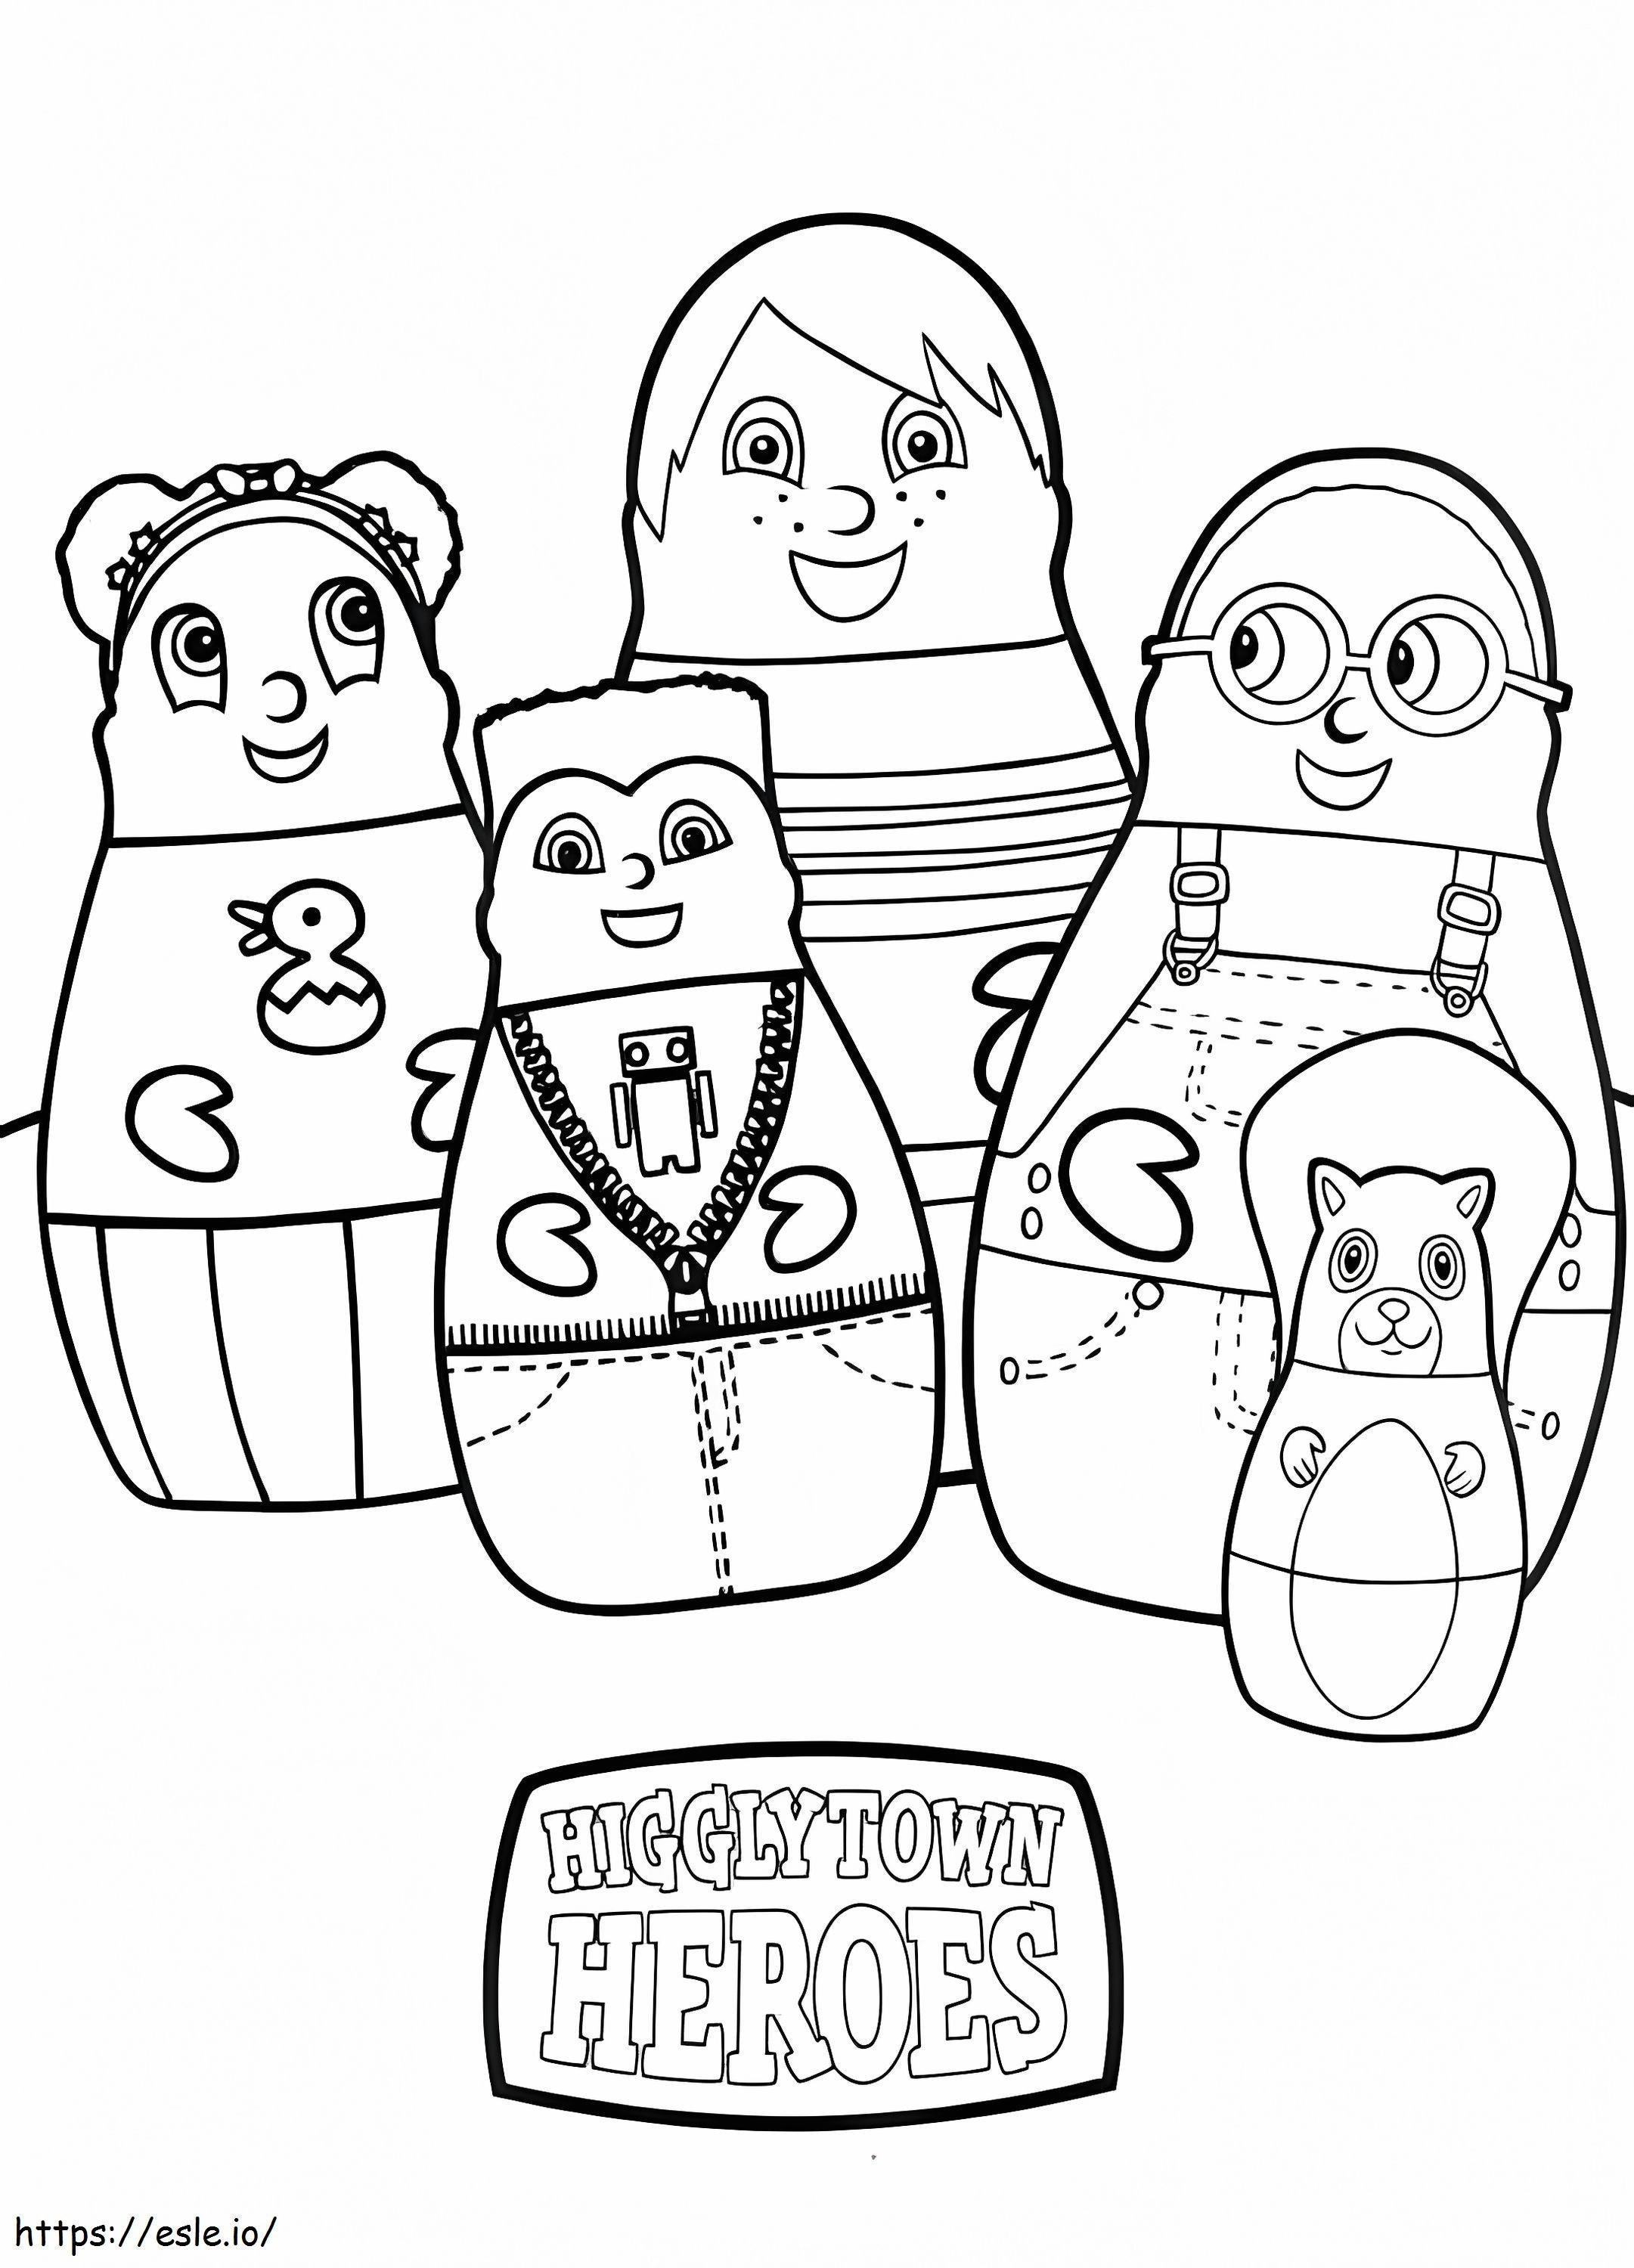 Personagens dos heróis de Higglytown para colorir